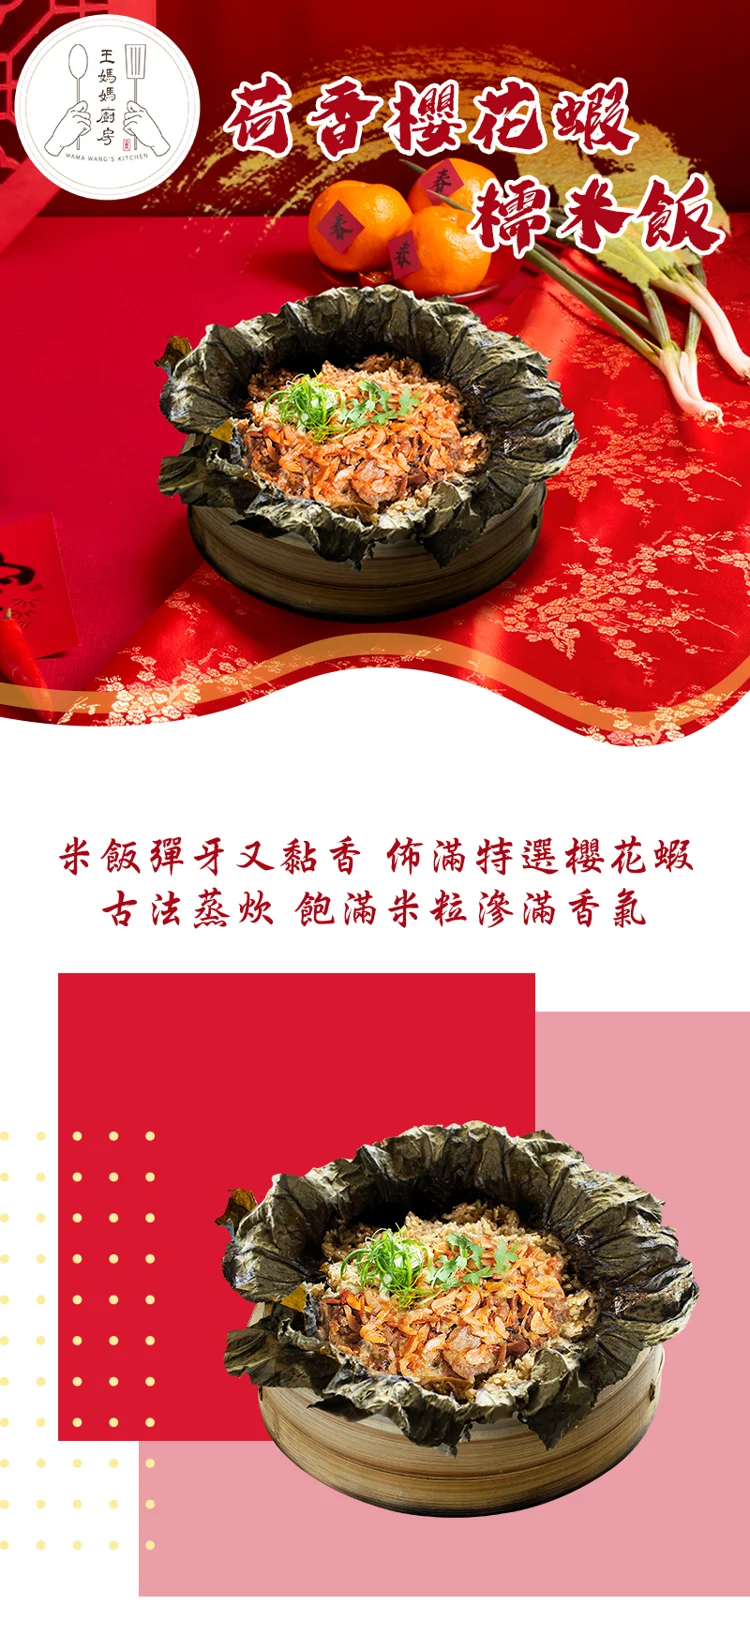 【王媽媽廚房】年菜-荷香櫻花蝦糯米飯